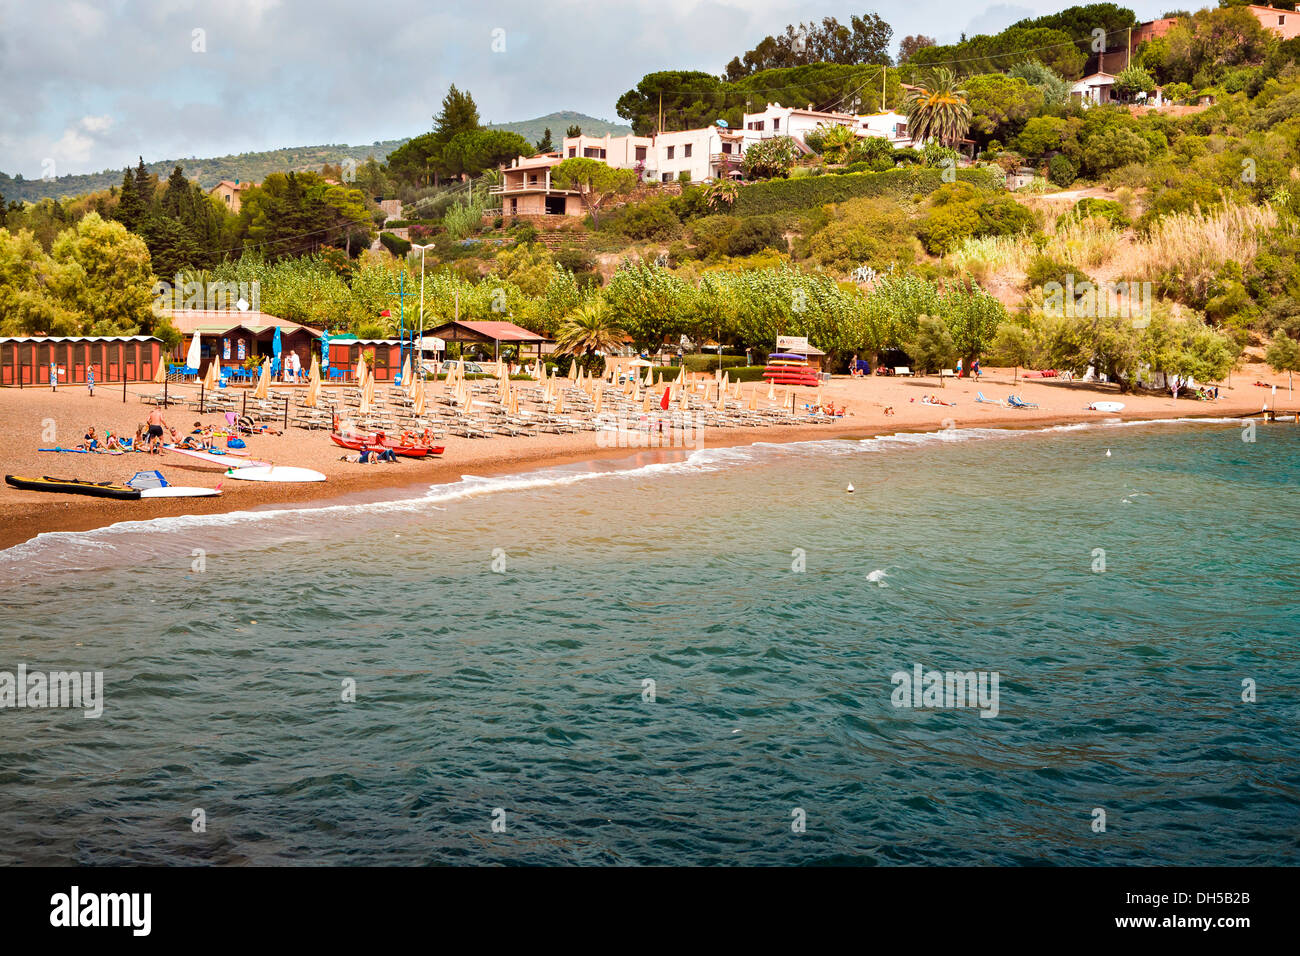 Barbarossa beach, Porto Azzuro, Elba Island, Italy, Europe Stock Photo -  Alamy